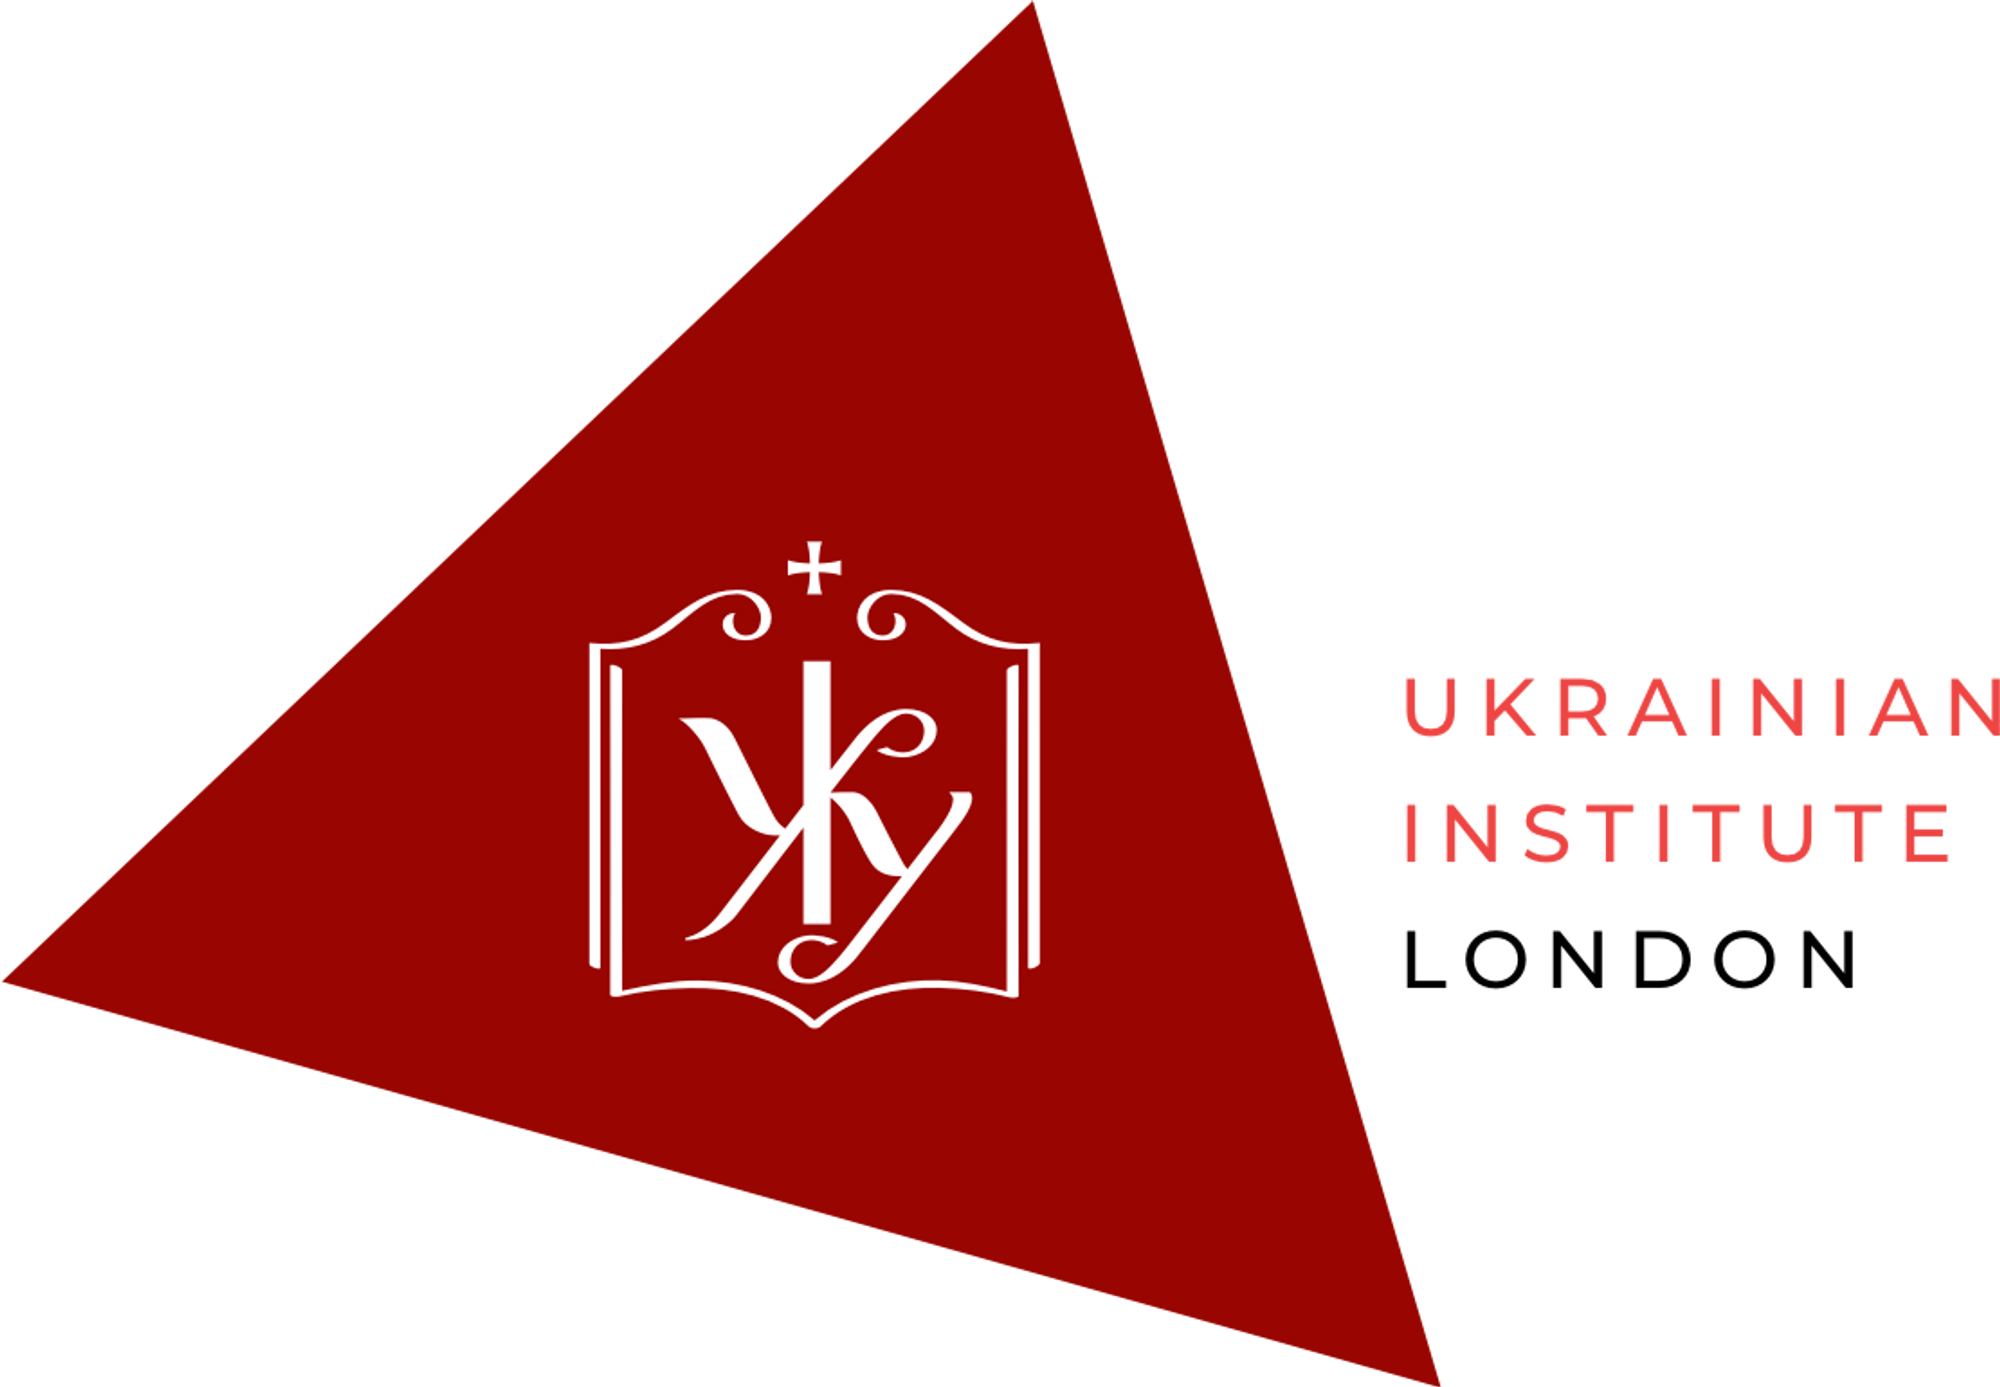 Ukraine Institute London